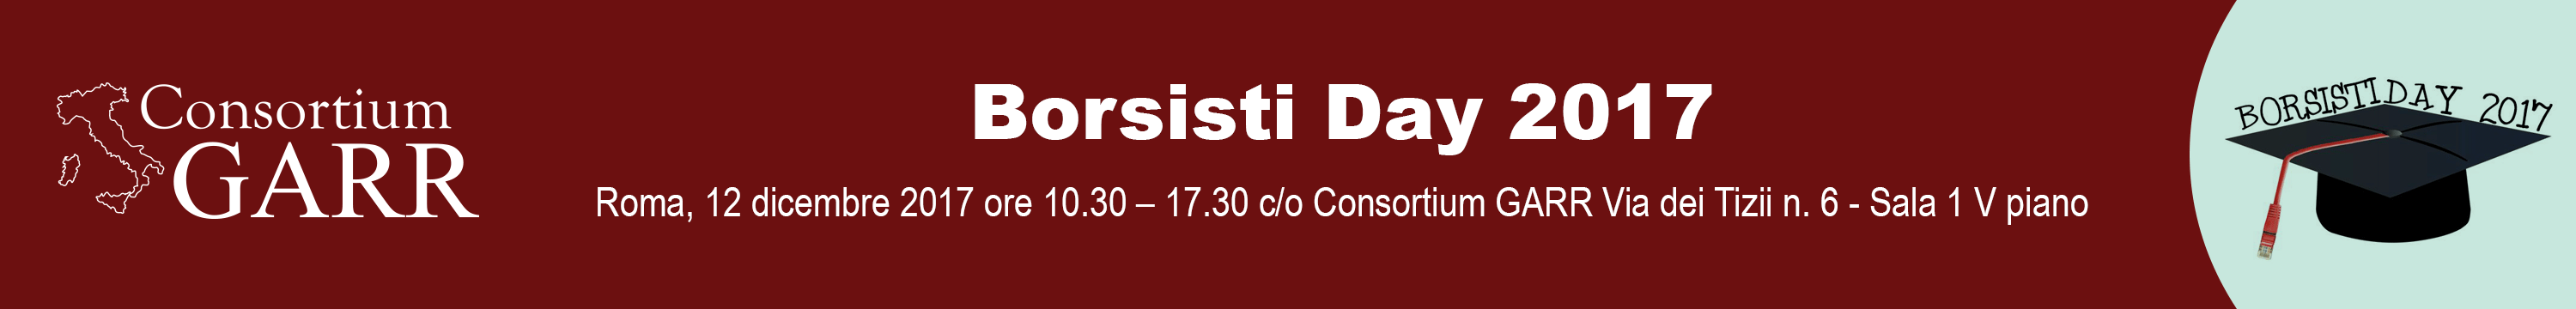 Borsisti day 2017